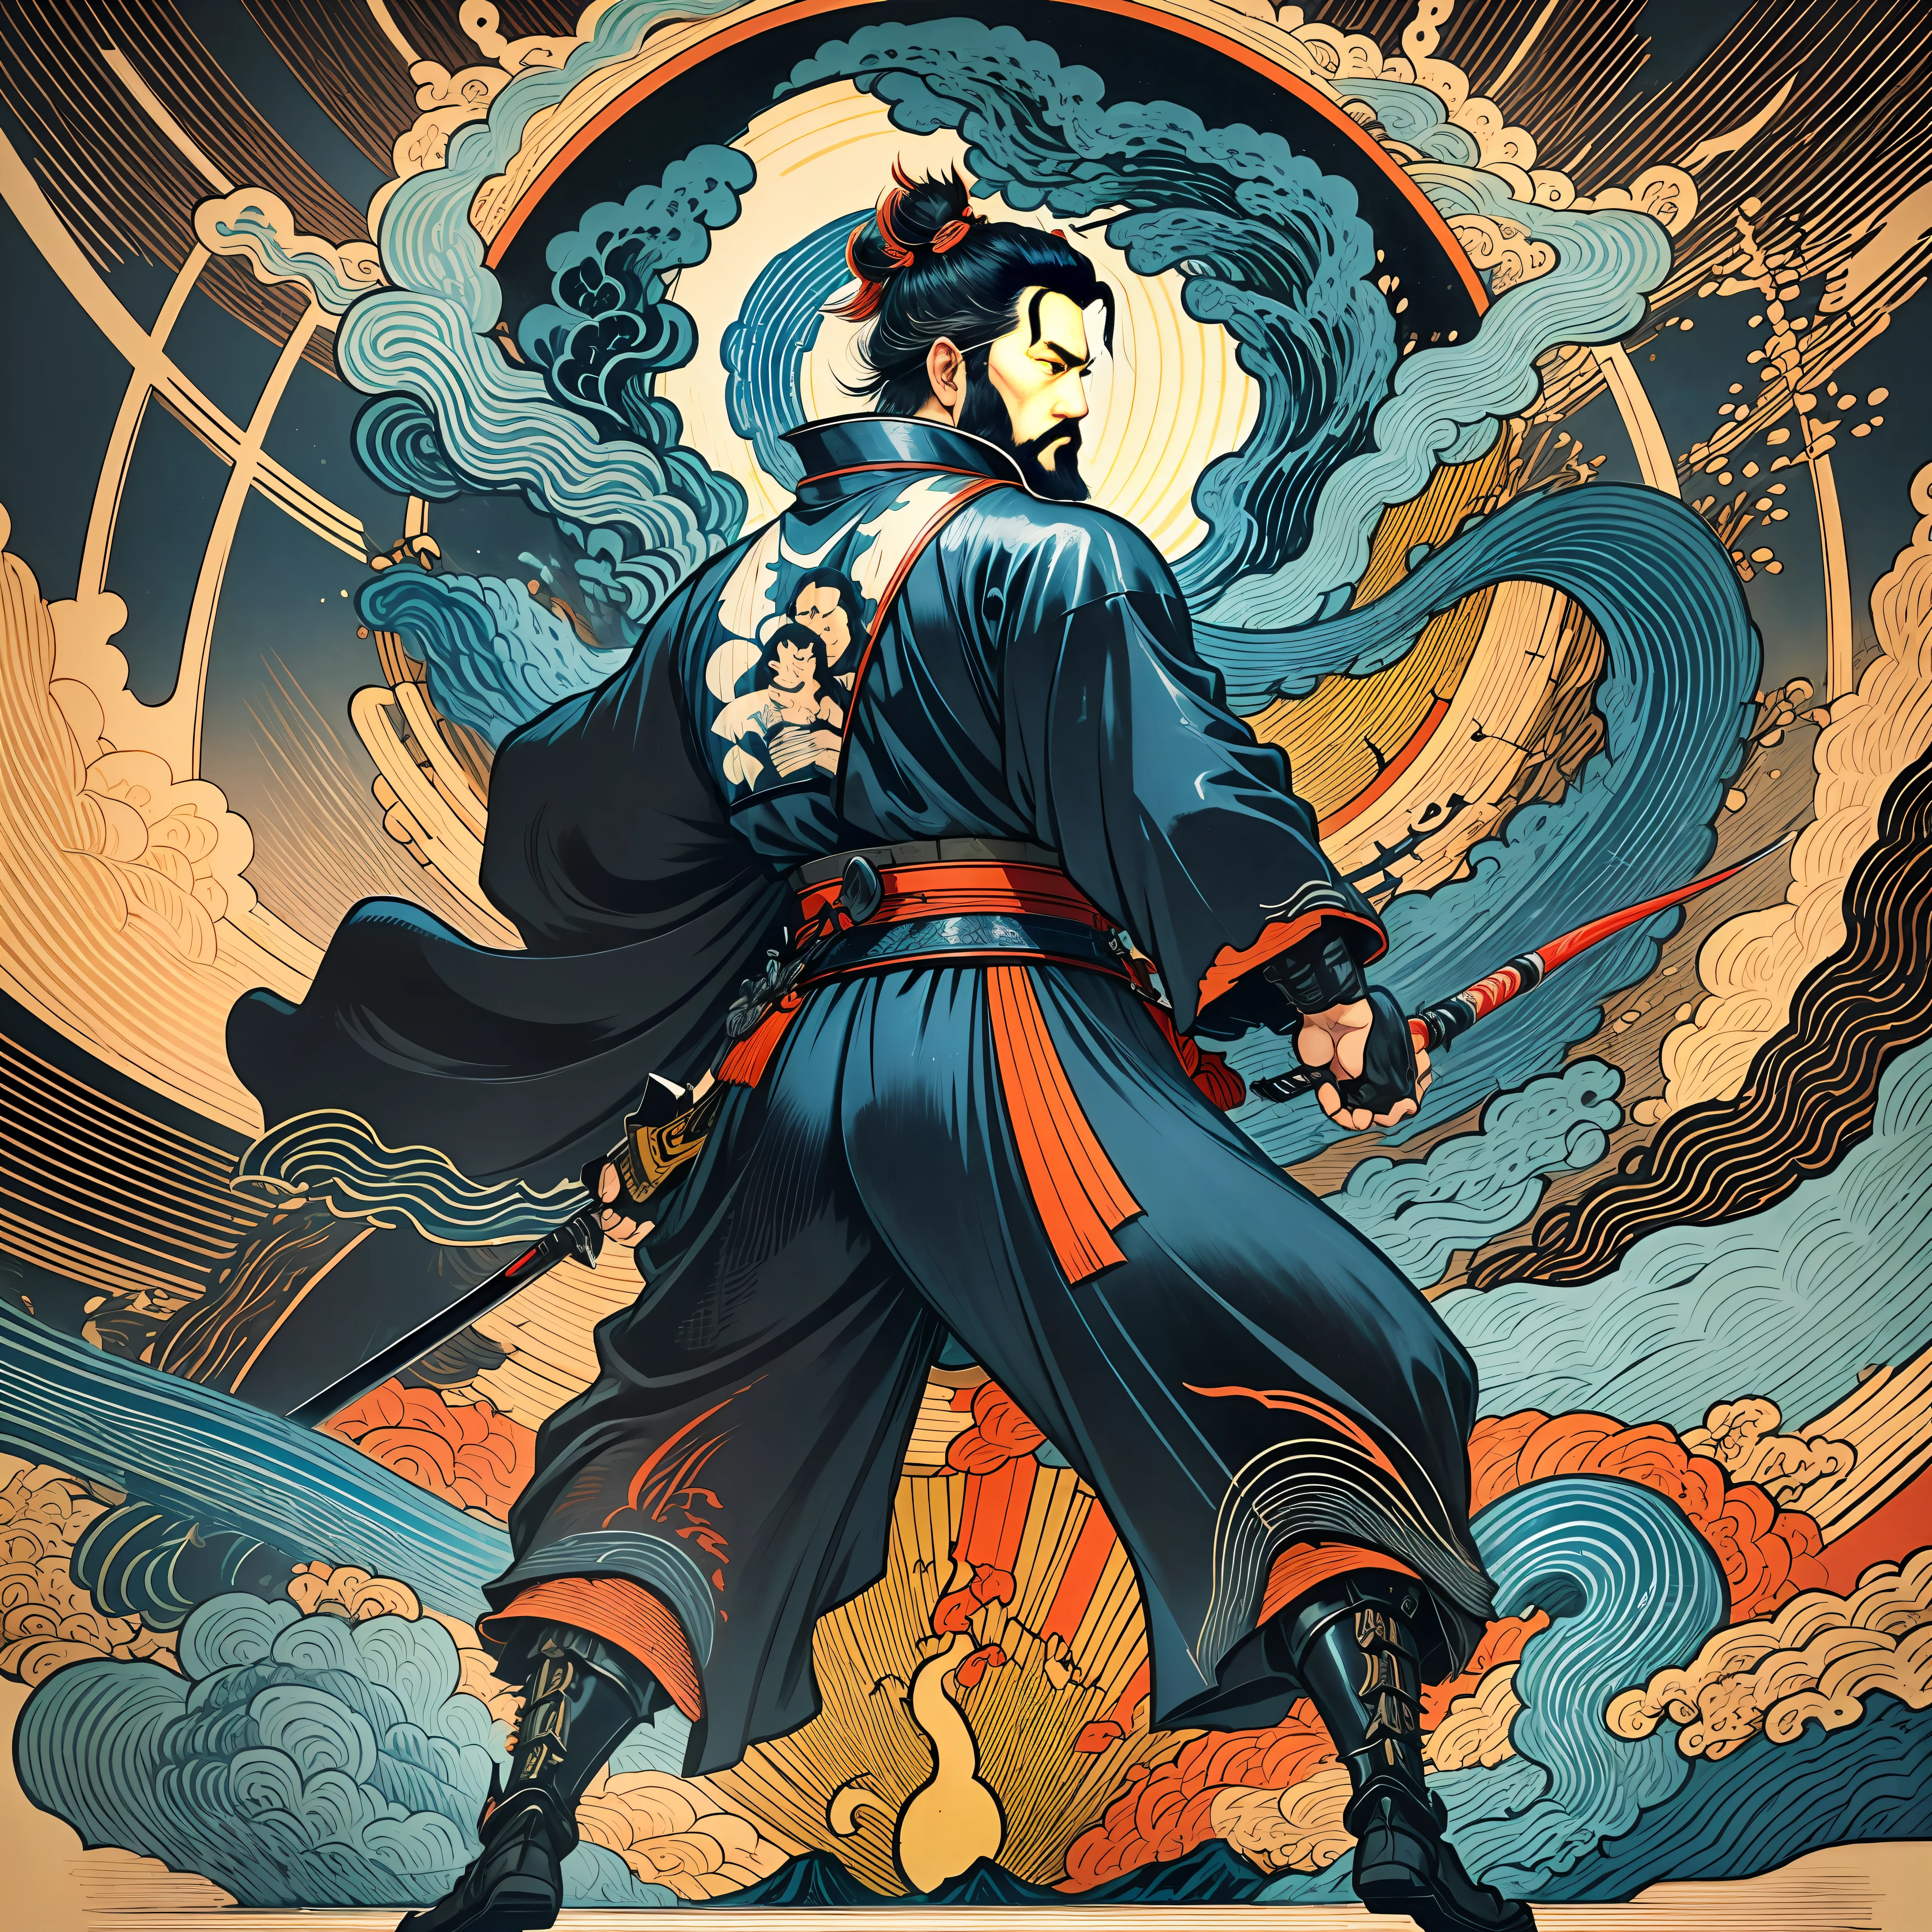 Es una pintura de cuerpo entero con colores naturales con dibujos lineales al estilo Katsushika Hokusai.. El espadachín Miyamoto Musashi tiene un cuerpo grande como el de un hombre fuerte.. Samurái de Japón. Con una expresión de determinación digna pero varonil., se enfrenta a los espíritus malignos. Tiene el pelo corto negro y un pelo corto., barba recortada. La parte superior de su cuerpo está cubierta con un kimono negro azabache con una textura brillante., y su hakama es hasta las rodillas. En su mano derecha sostiene una espada japonesa con una parte más larga.. en la más alta calidad, obra maestra de alta resolución estilo ukiyo-e relámpagos y llamas arremolinadas. Entre ellos, Miyamoto Musashi está de pie con la espalda recta., mirando al frente.